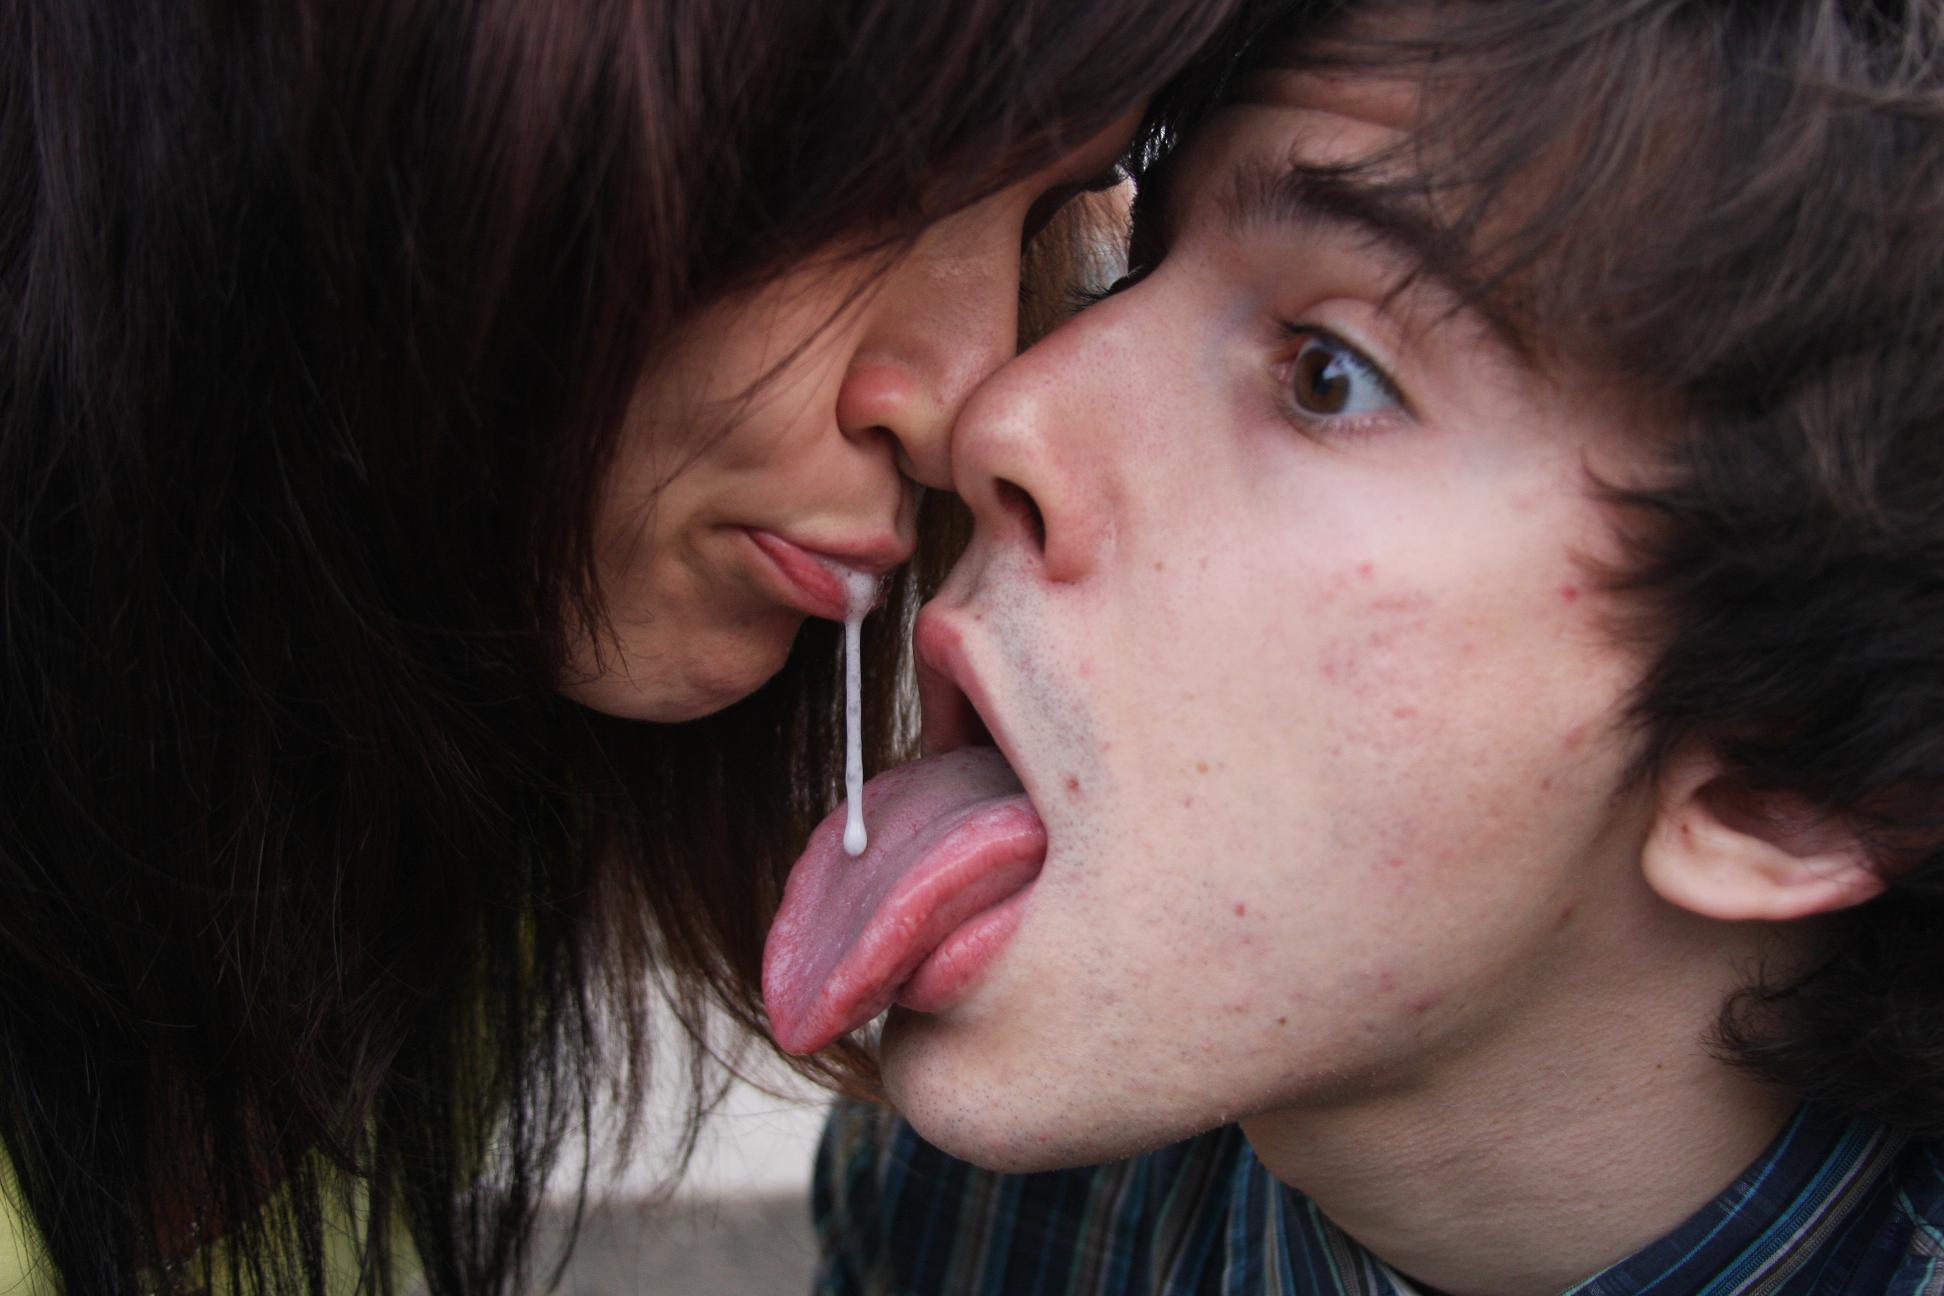 целует рот в сперме девушки фото 99